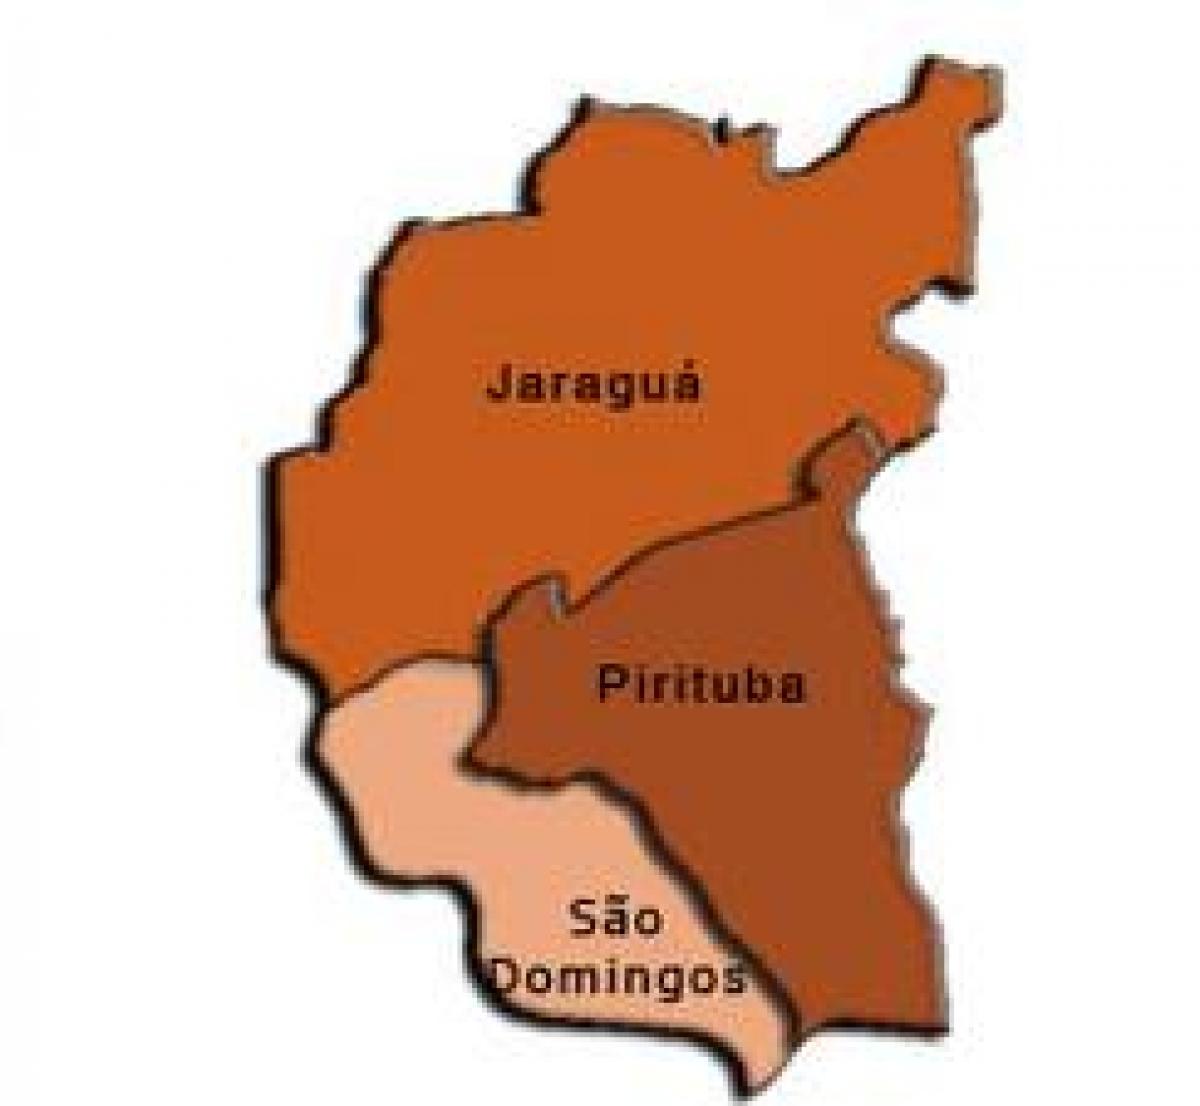 რუკა Pirituba-Jaraguá sub-prefecture